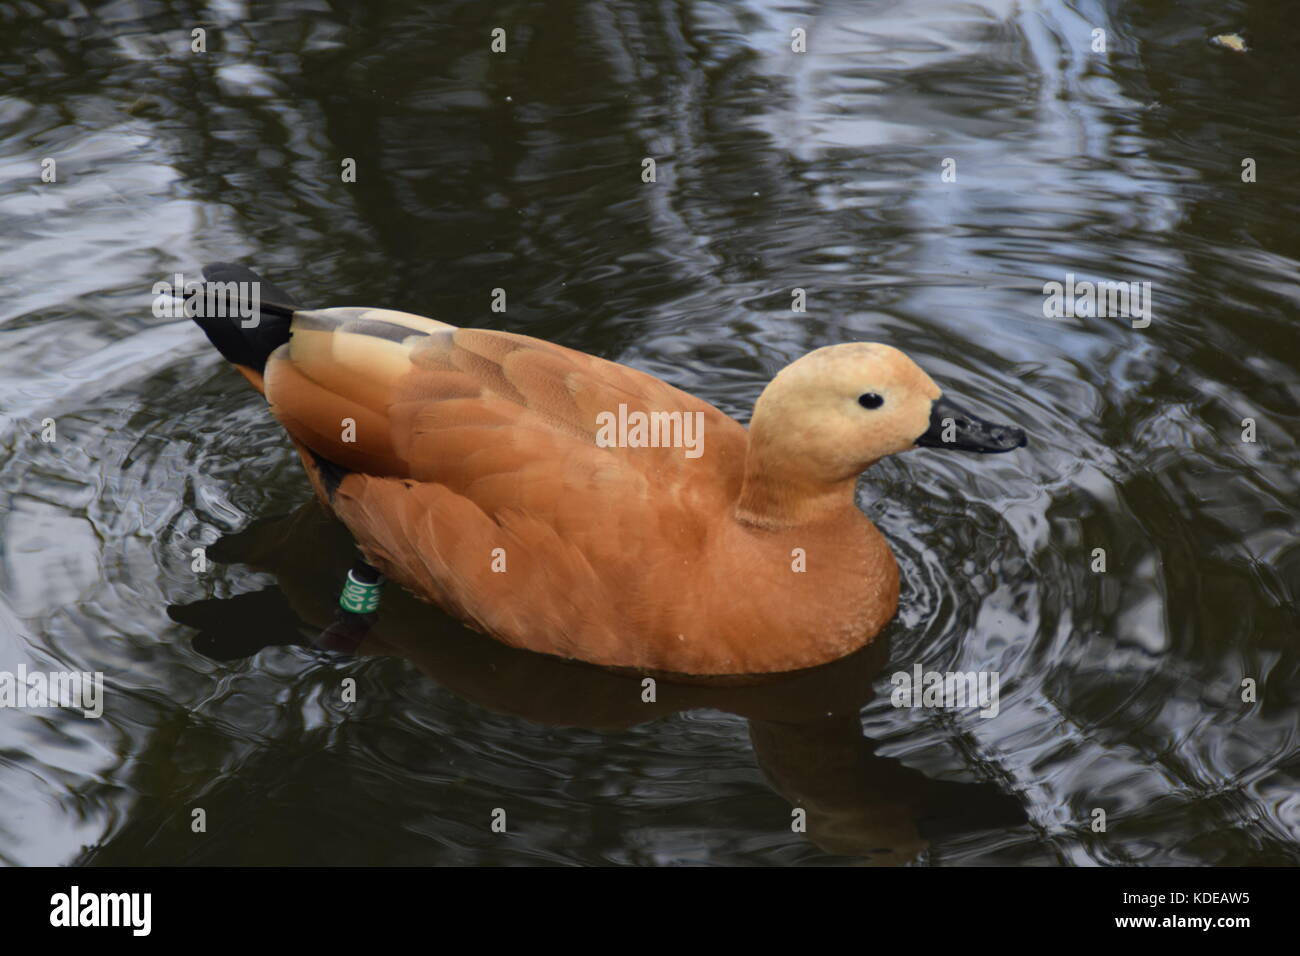 Duck marrone chiaro nel lago - close up - tadorna feruginea - rubicondo shwelduck piumaggio con una più pallida di testa - uccello sacro - uccelli acquatici Foto Stock